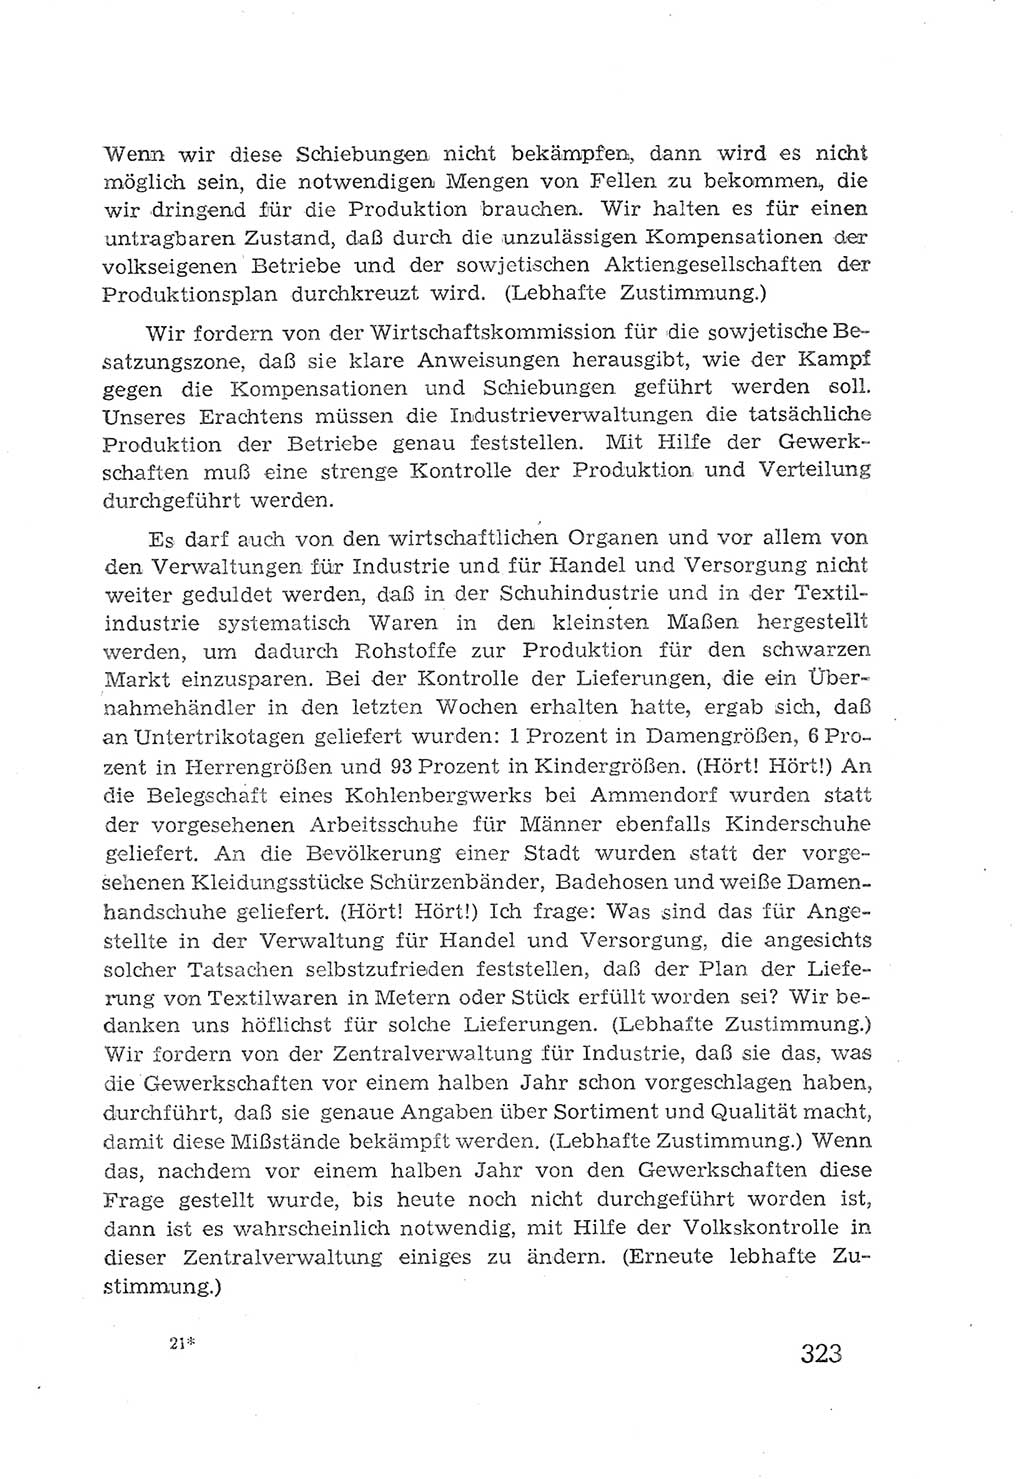 Protokoll der Verhandlungen des 2. Parteitages der Sozialistischen Einheitspartei Deutschlands (SED) [Sowjetische Besatzungszone (SBZ) Deutschlands] 1947, Seite 323 (Prot. Verh. 2. PT SED SBZ Dtl. 1947, S. 323)